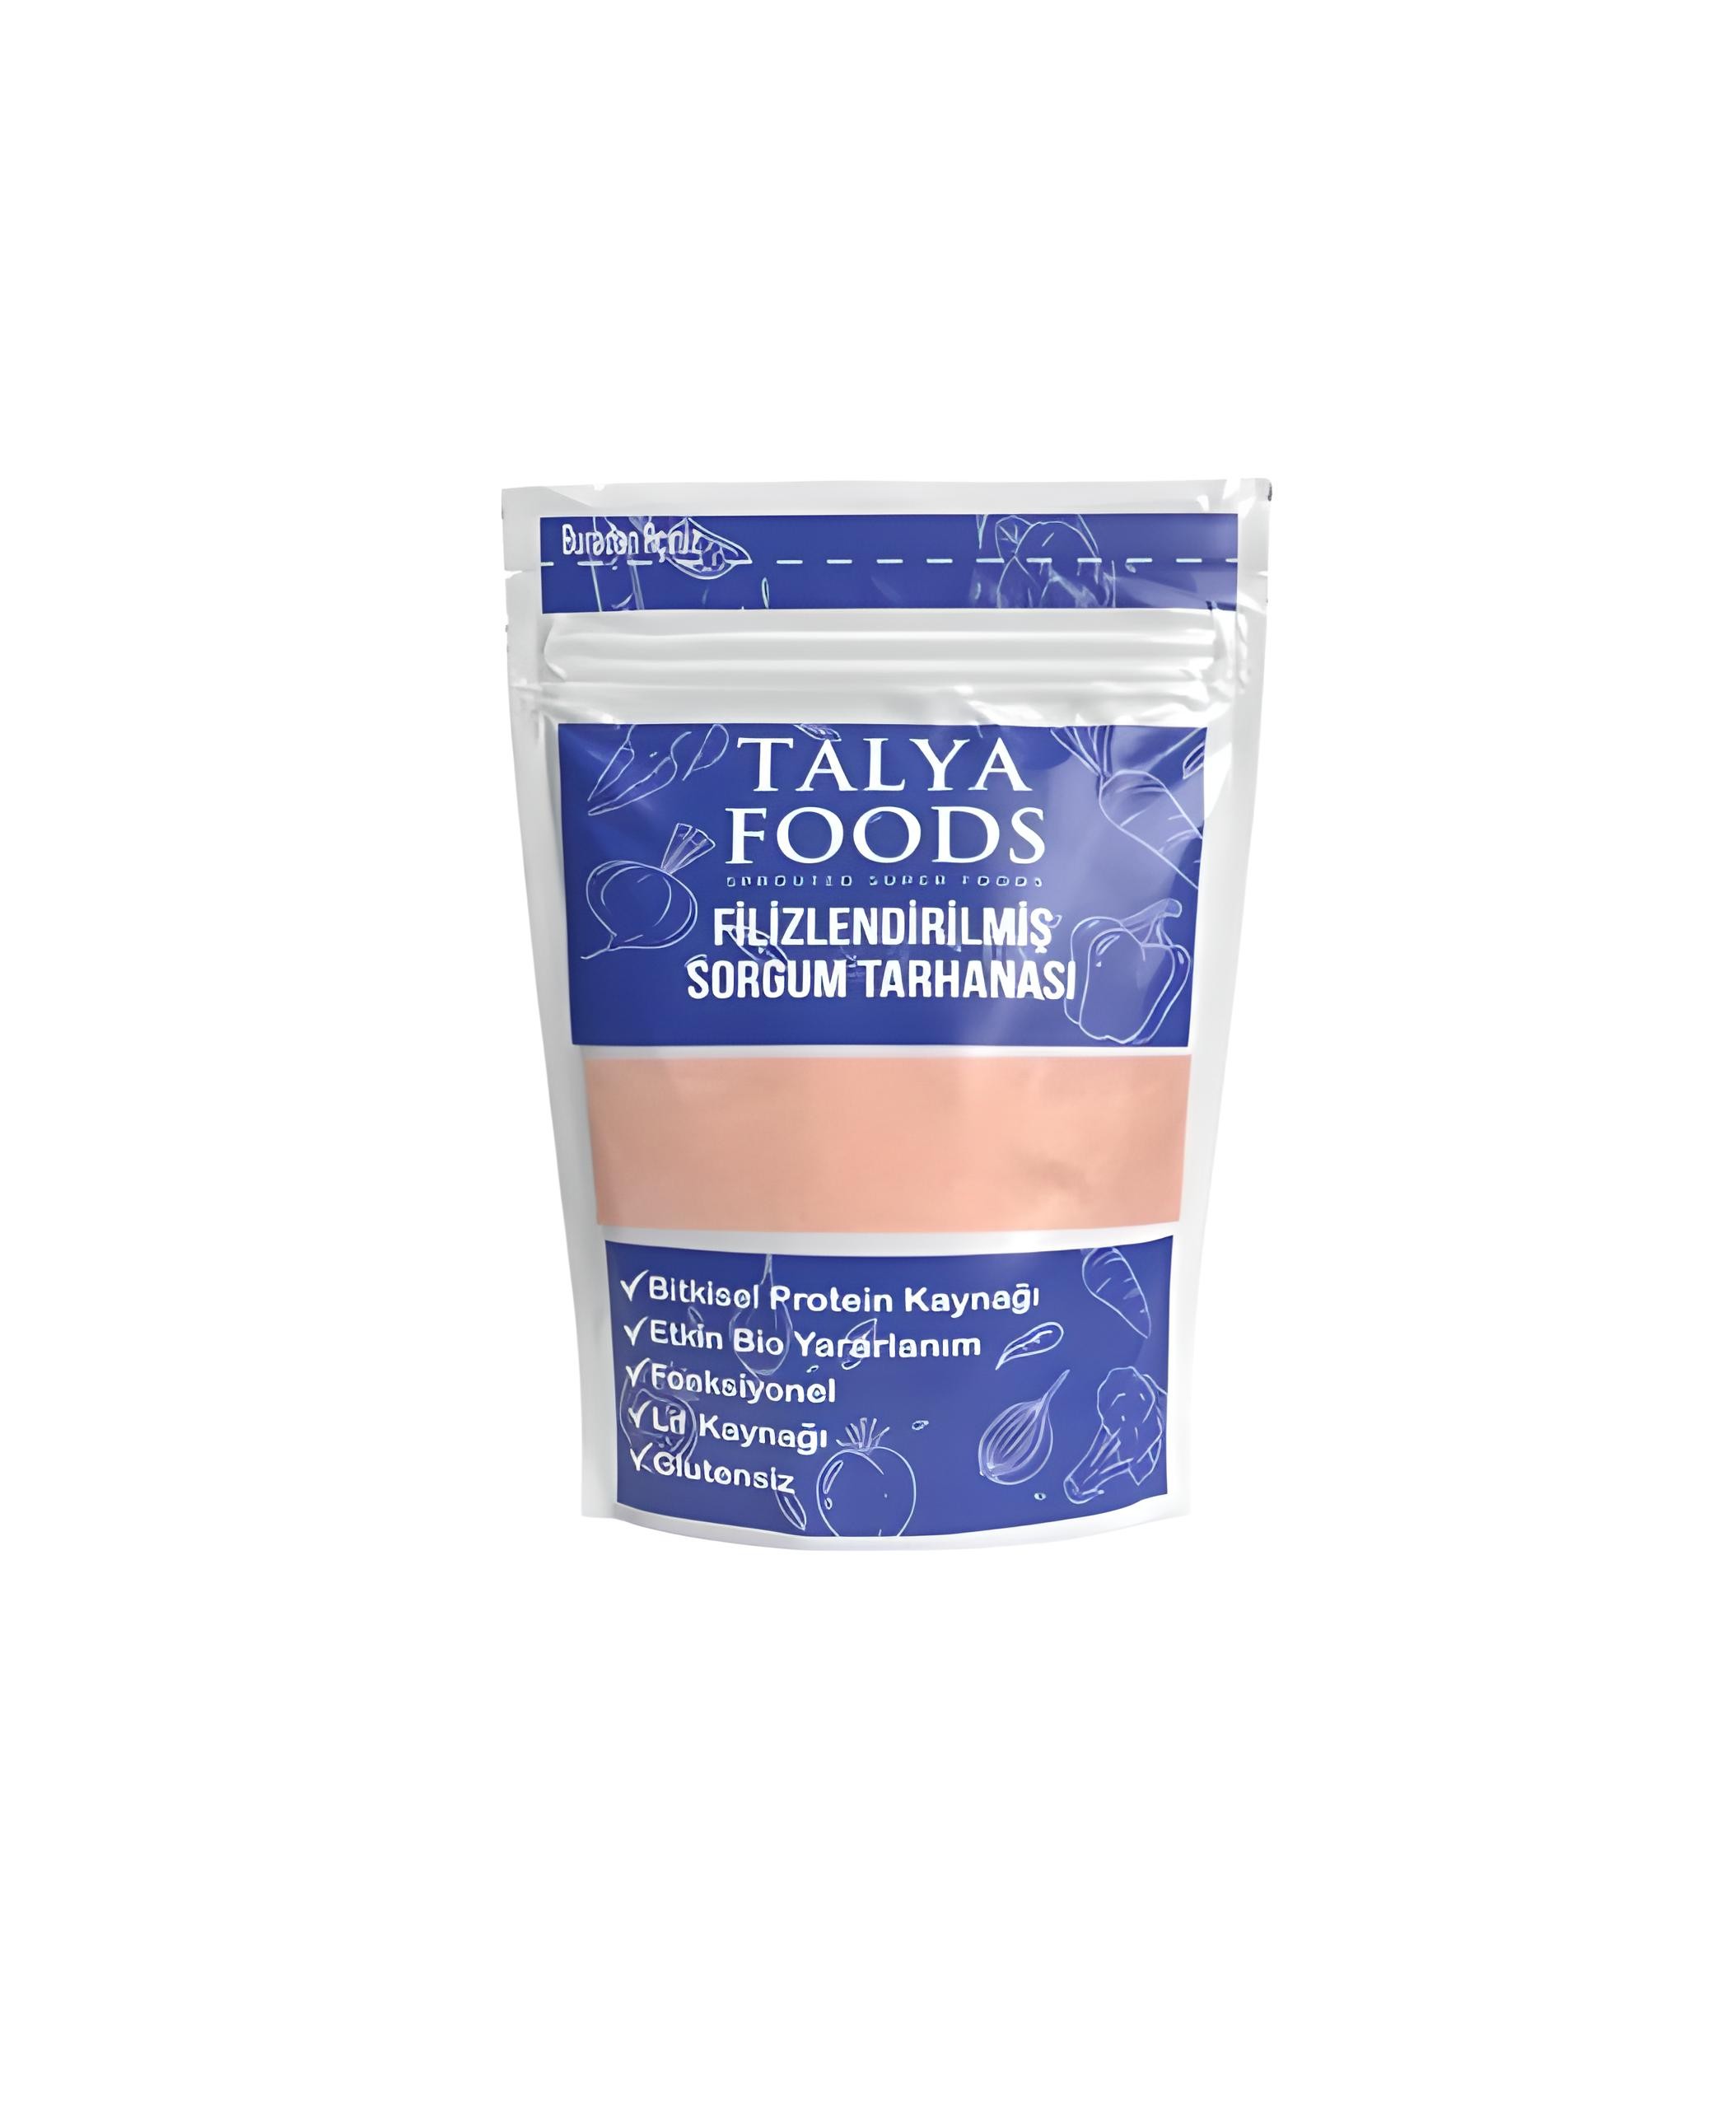 Talya Foods Glutensiz Organik Filizlendirilmiş Sorgum  Tarhanası 250g